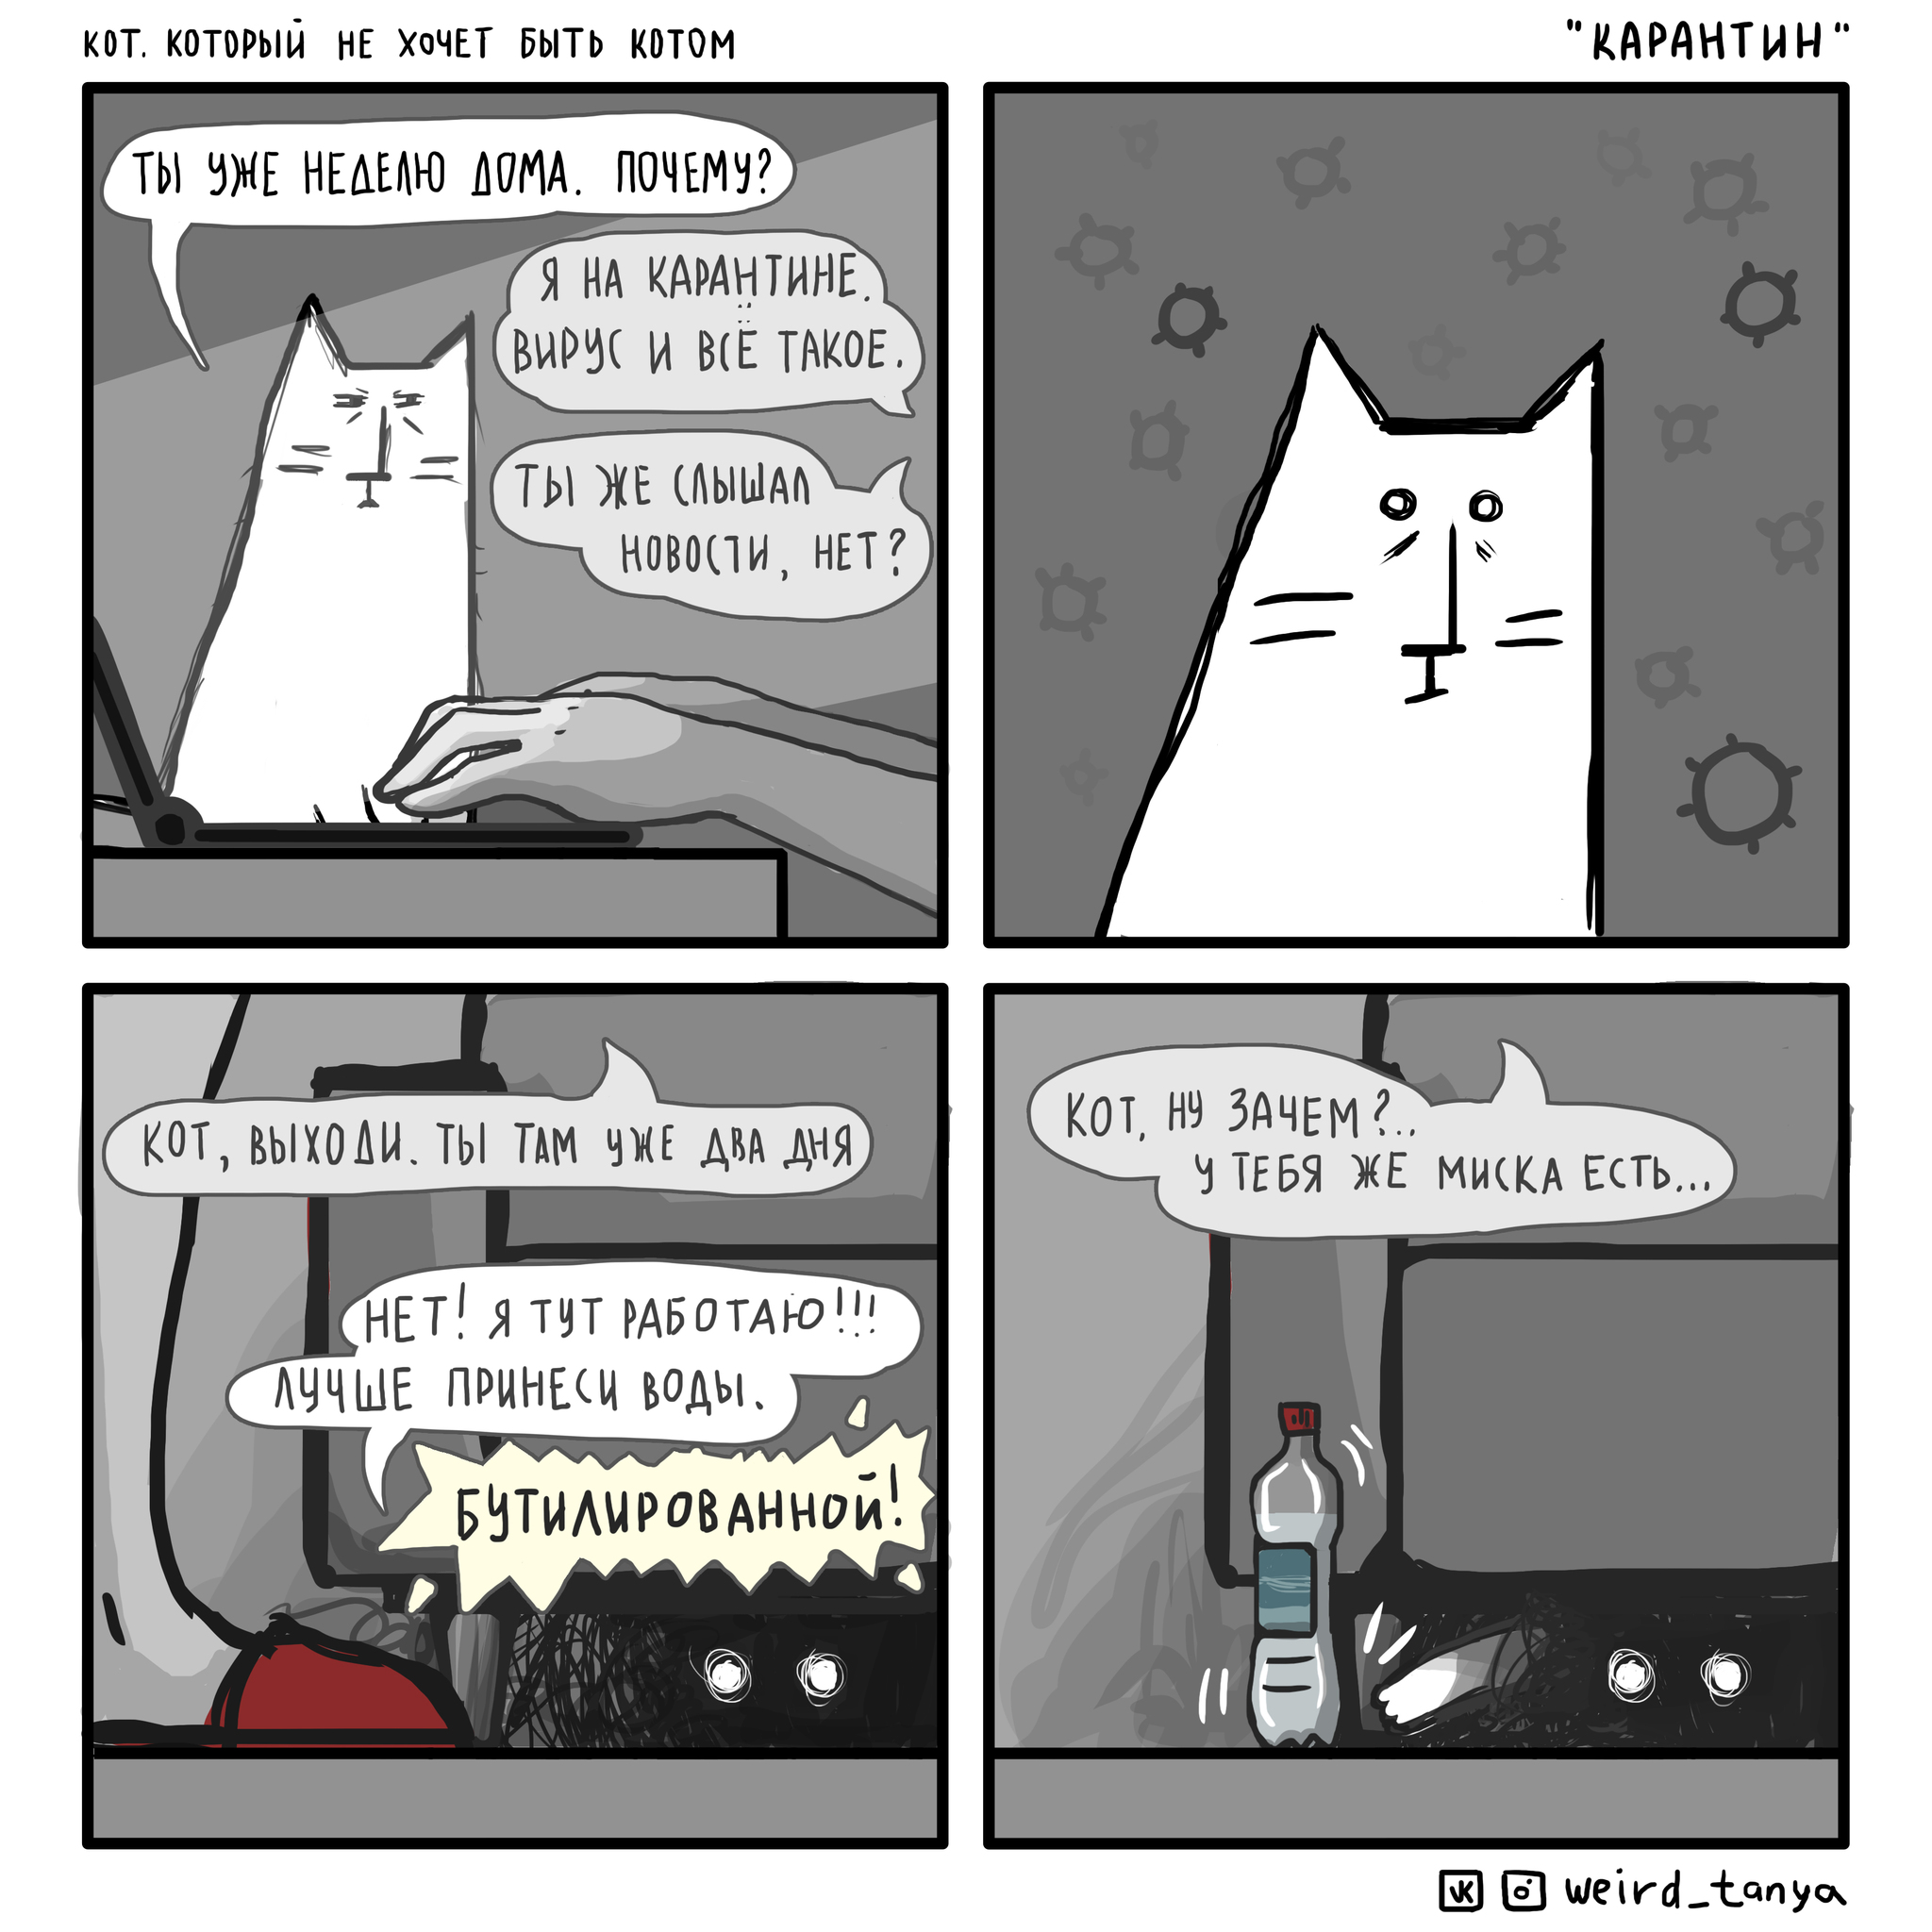 Зачем человеку кот